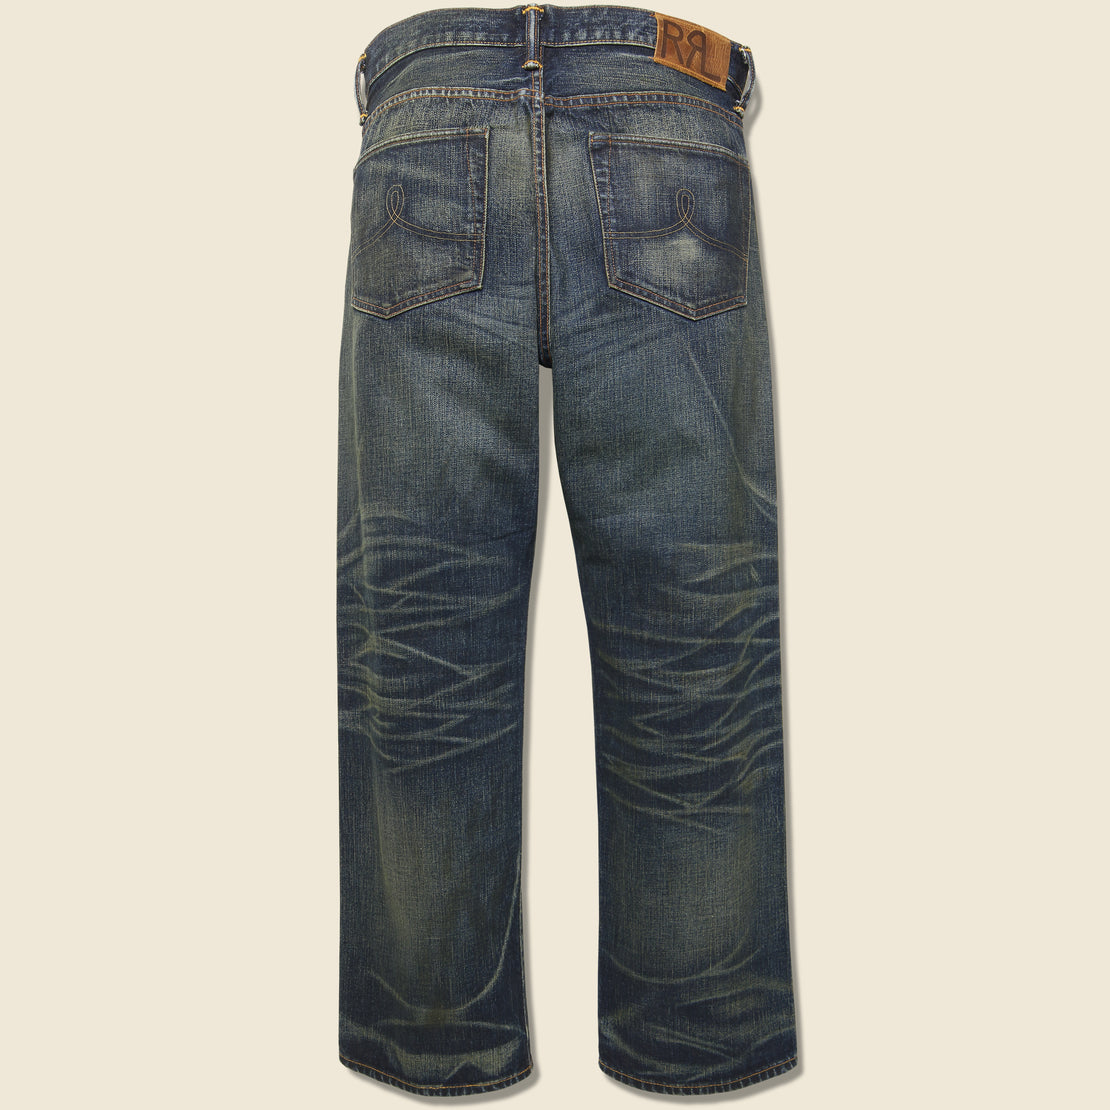 Vintage 5 Pocket Jean - Givins Wash - RRL - STAG Provisions - Pants - Denim